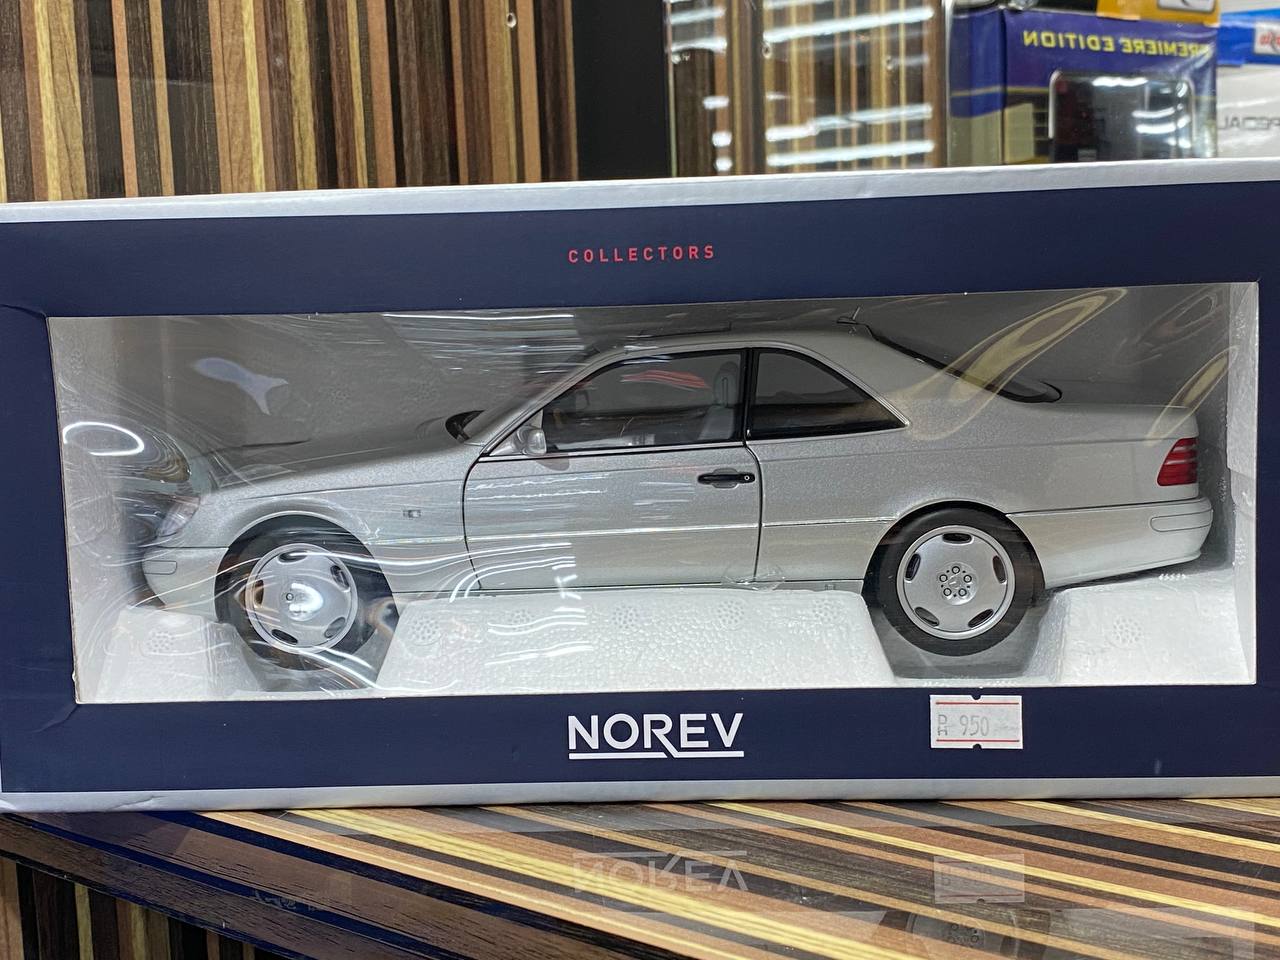 Mercedes-Benz CL600 Coupe Norev